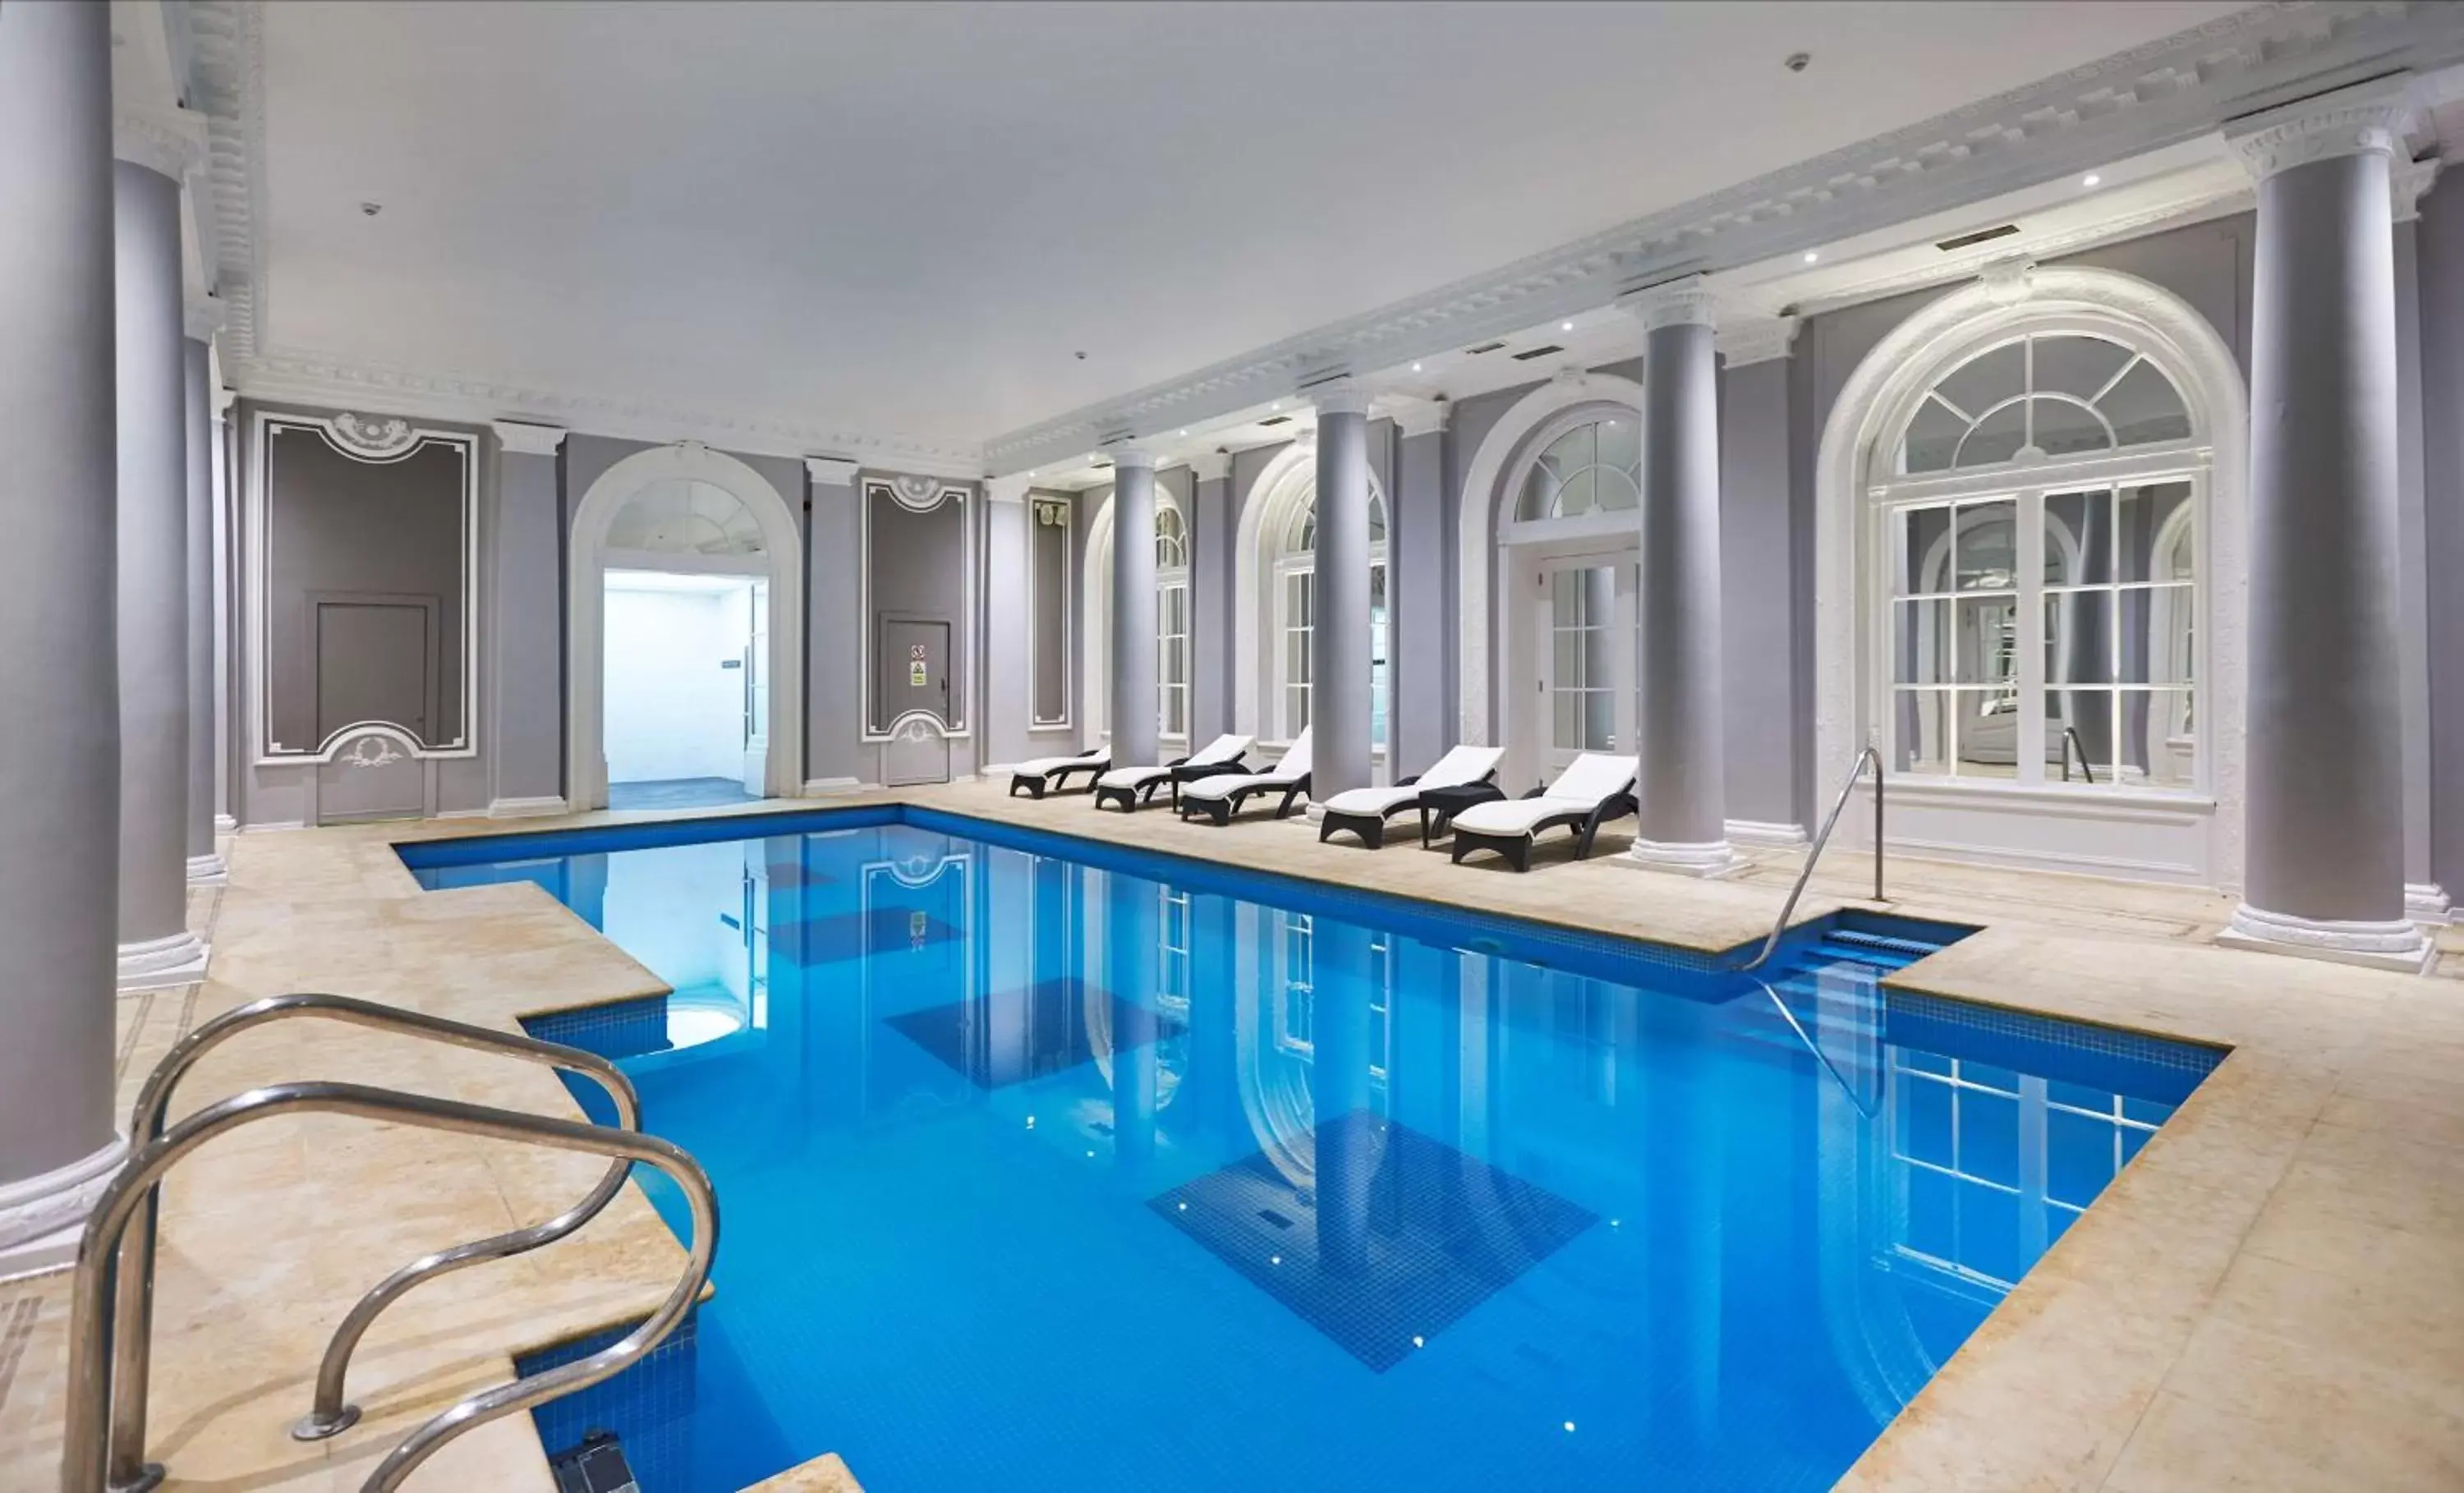 Pool view, Swimming Pool in The Waldorf Hilton